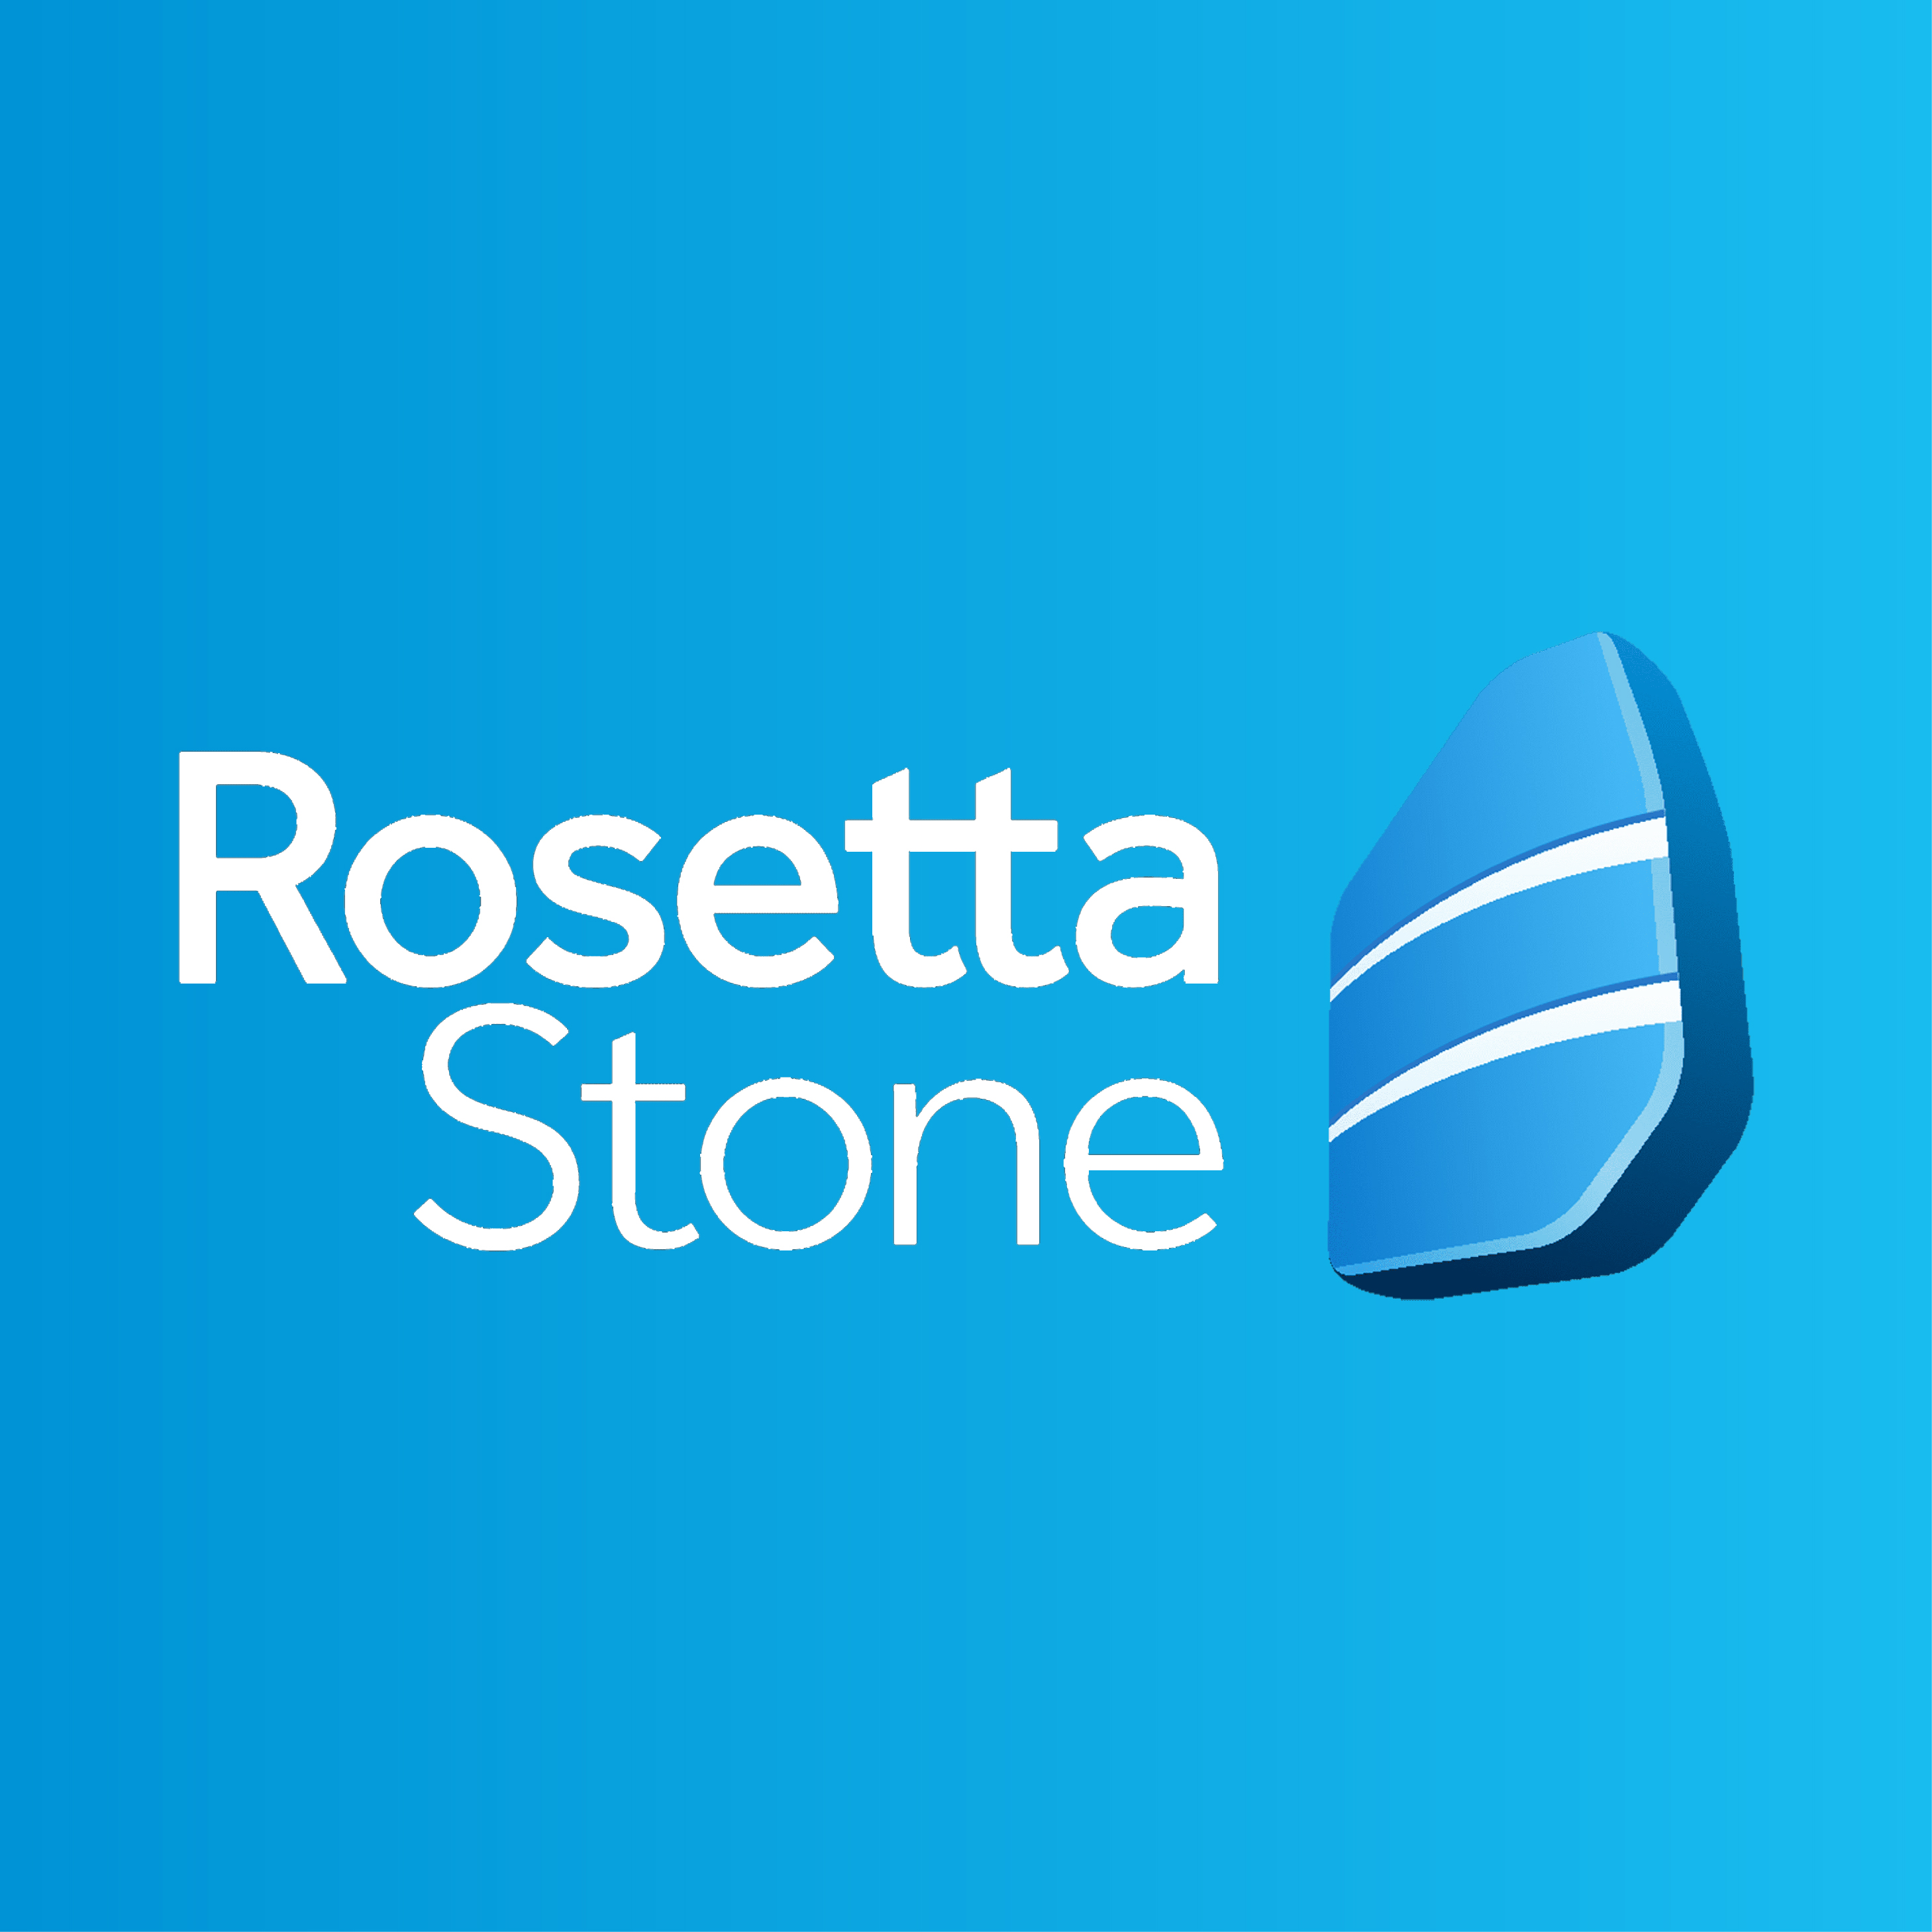 Rosetta stone Logo